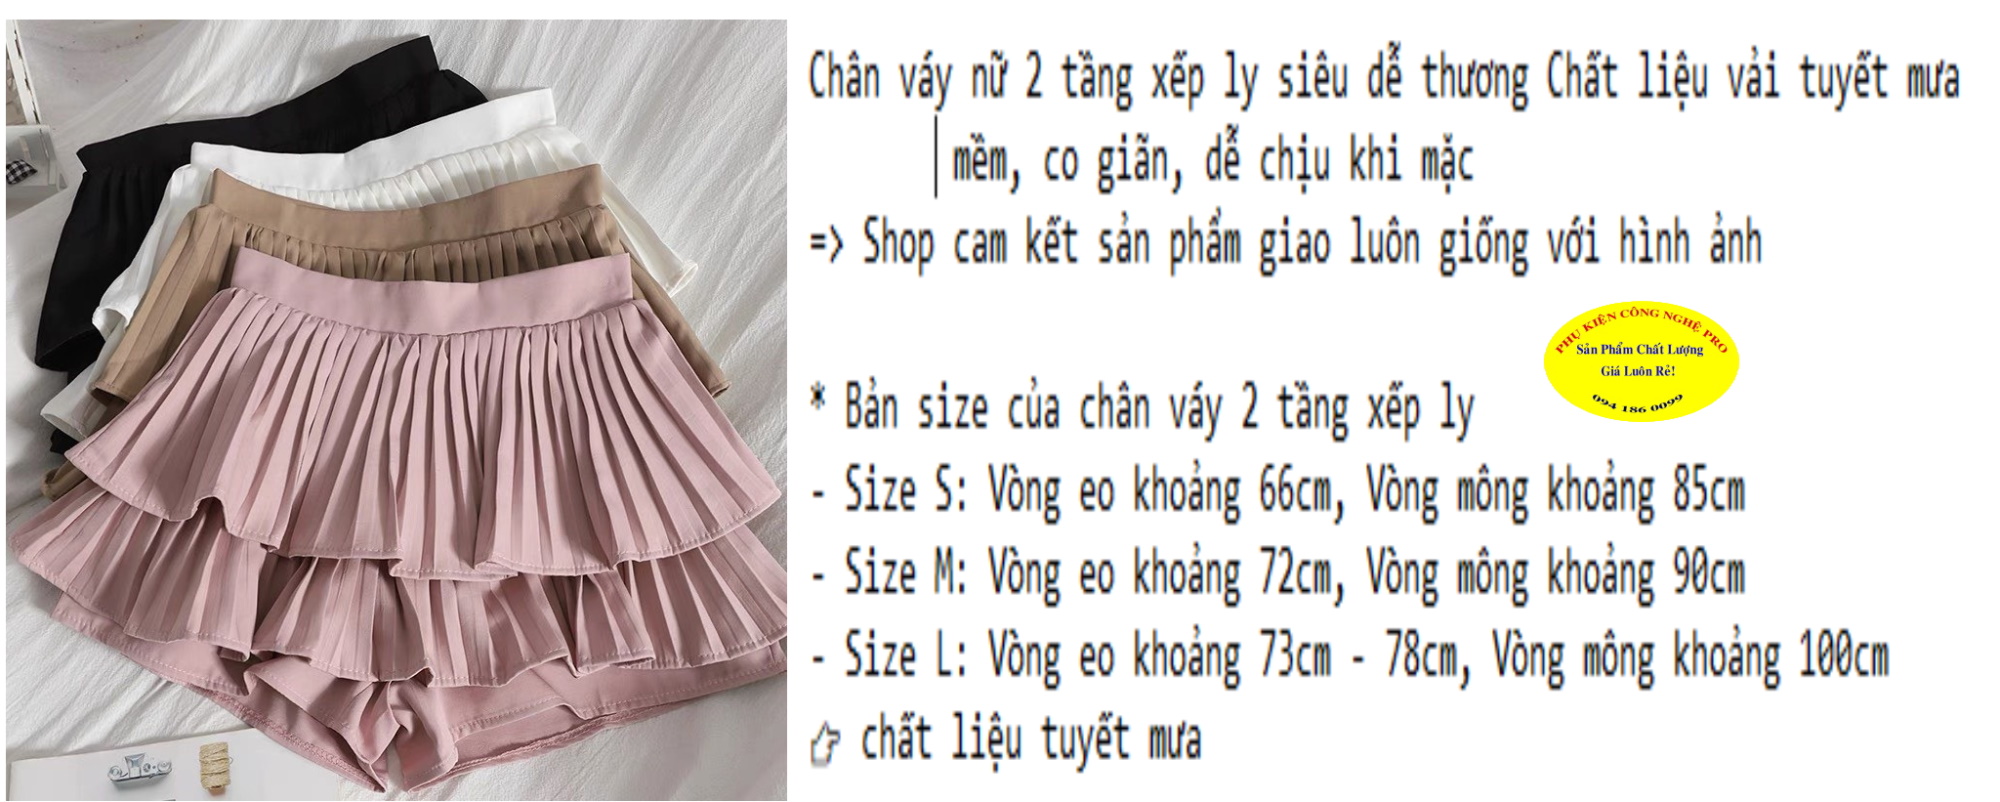 Chân Váy Xoè Dài Qua Gối Chất Liệu Tuyết Mưa MSCV124 | Shopee Việt Nam